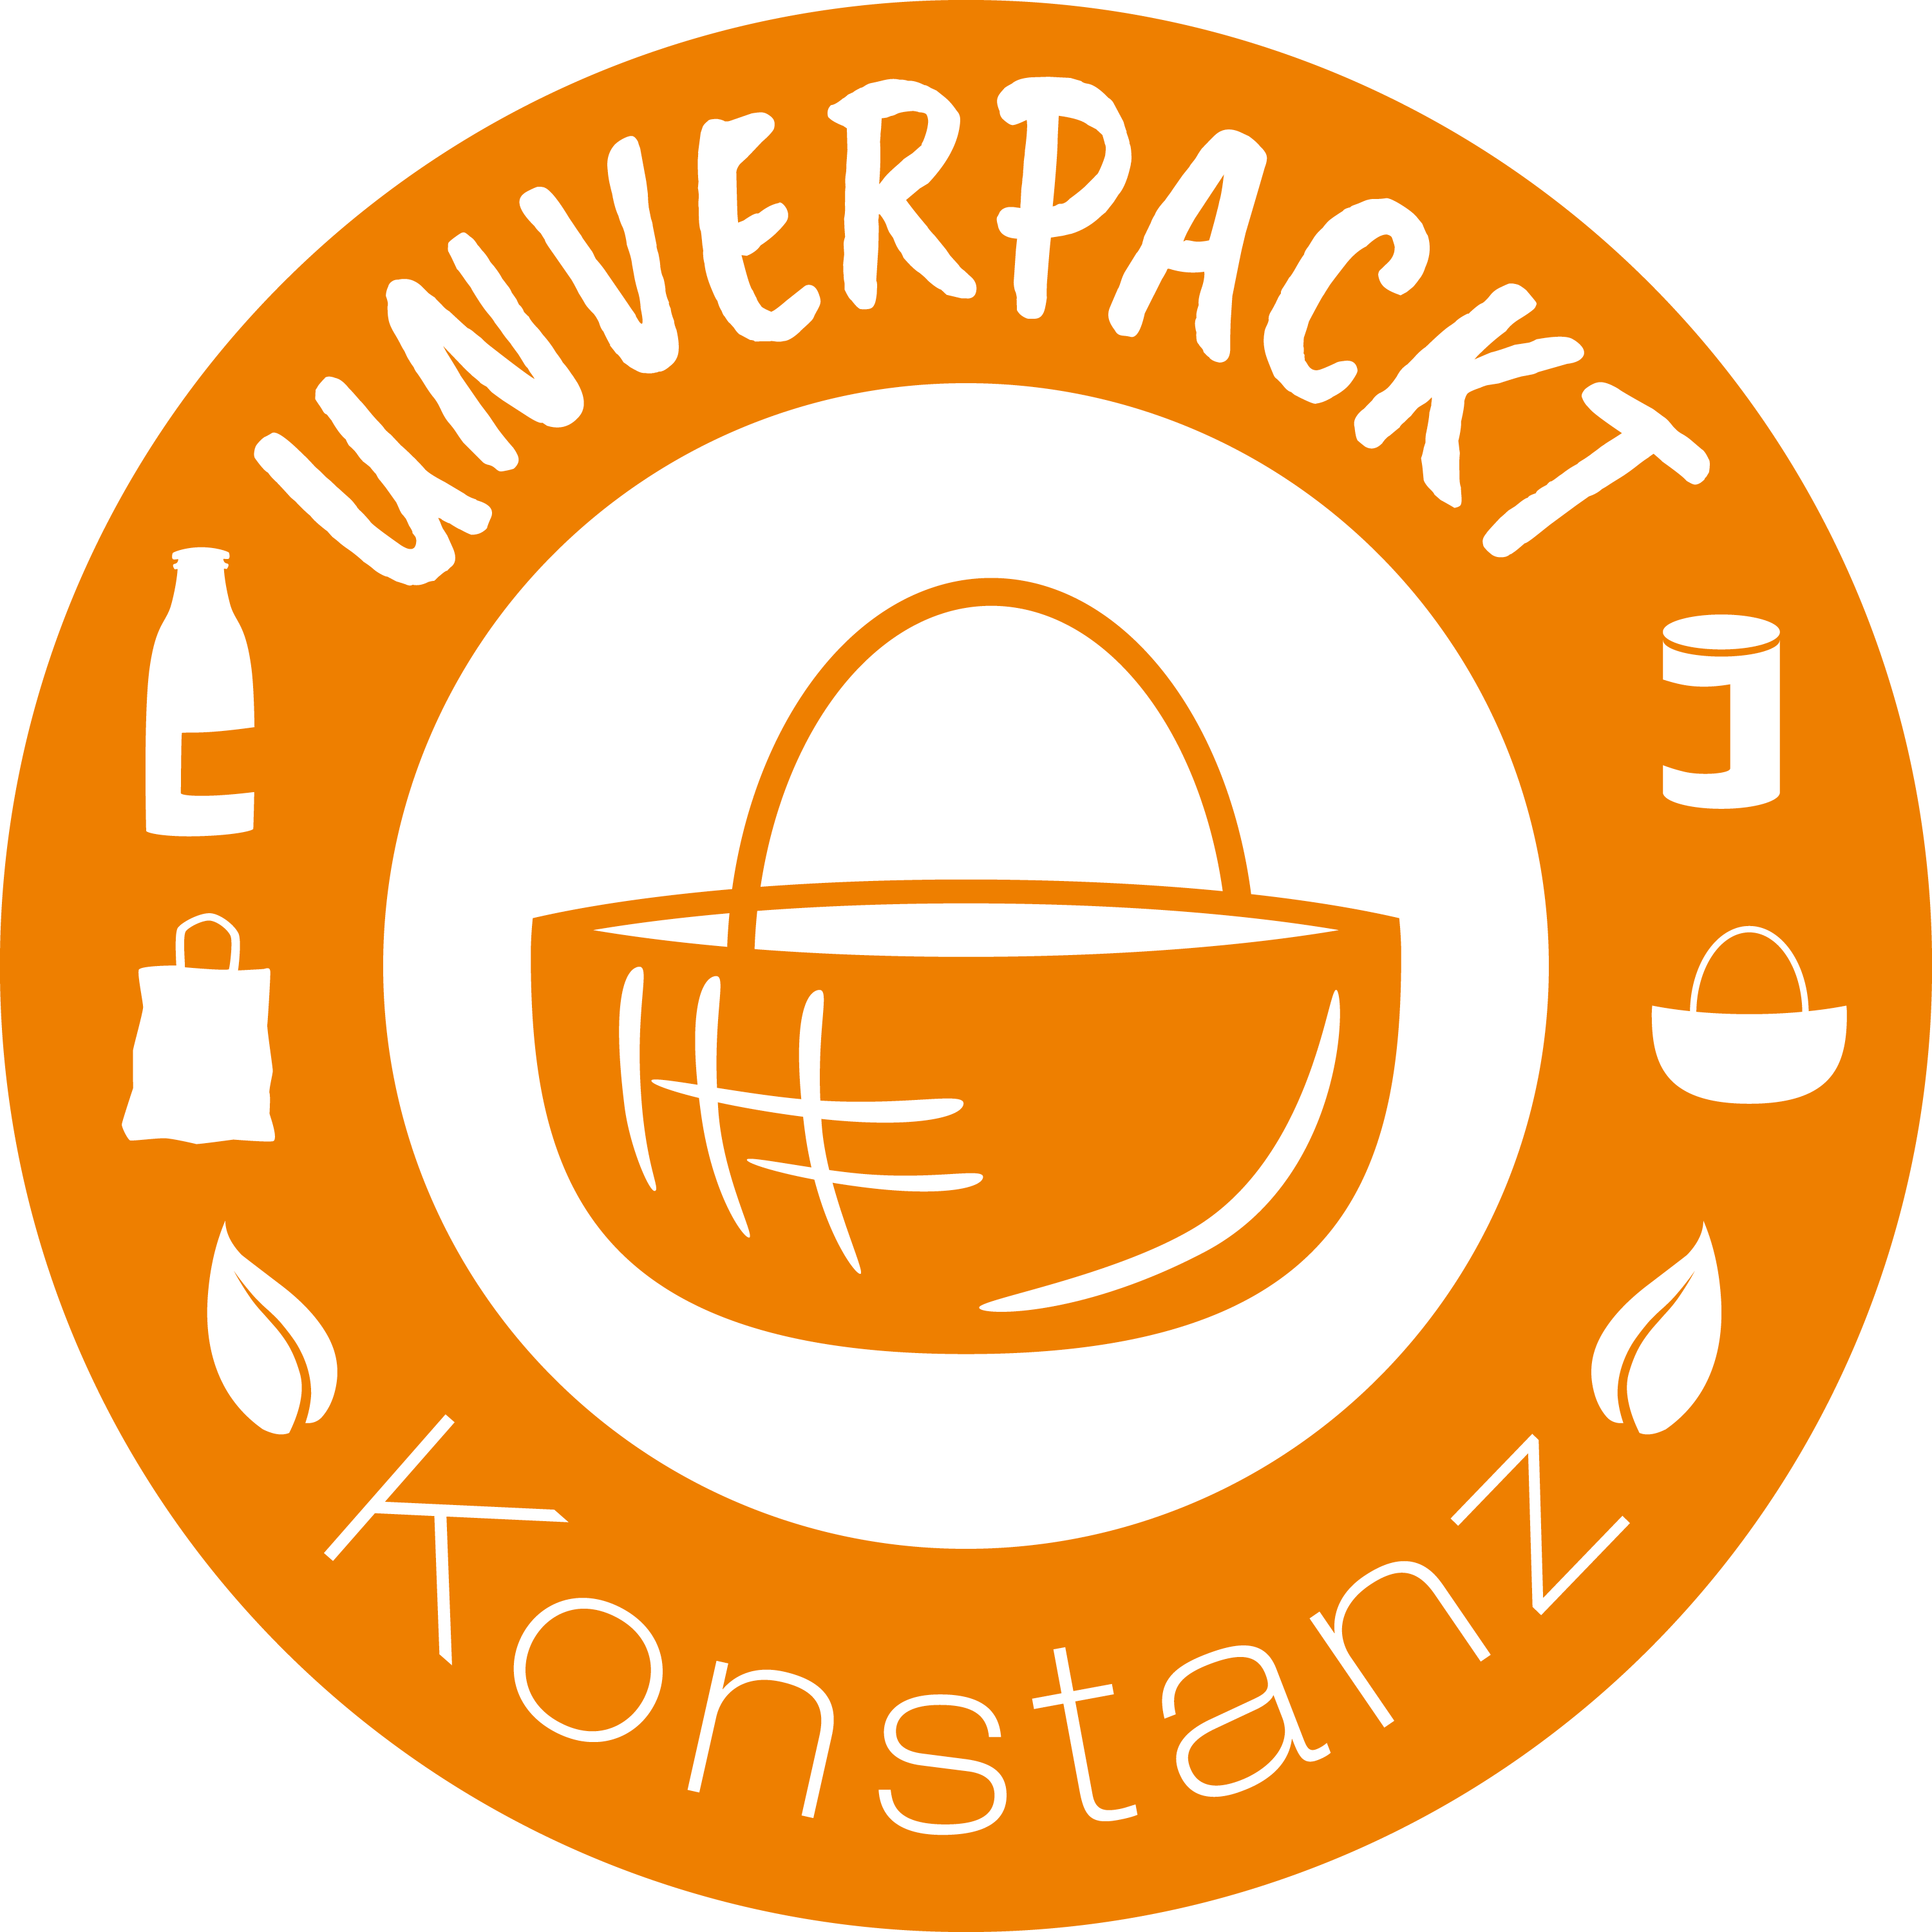 Unverpackt Konstanz Logo